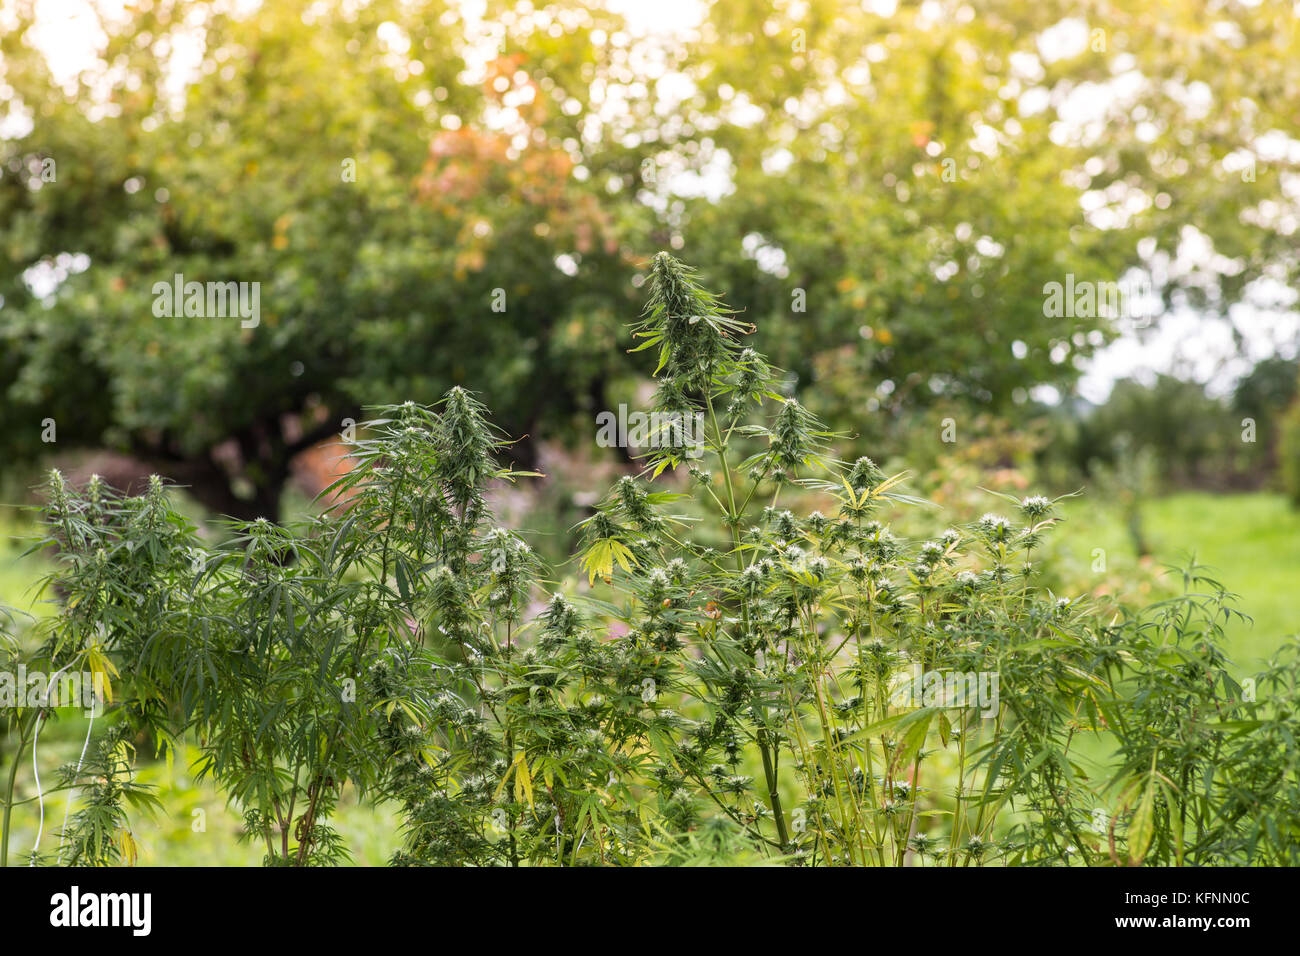 Medicinal marijuana plant in a garden Stock Photo